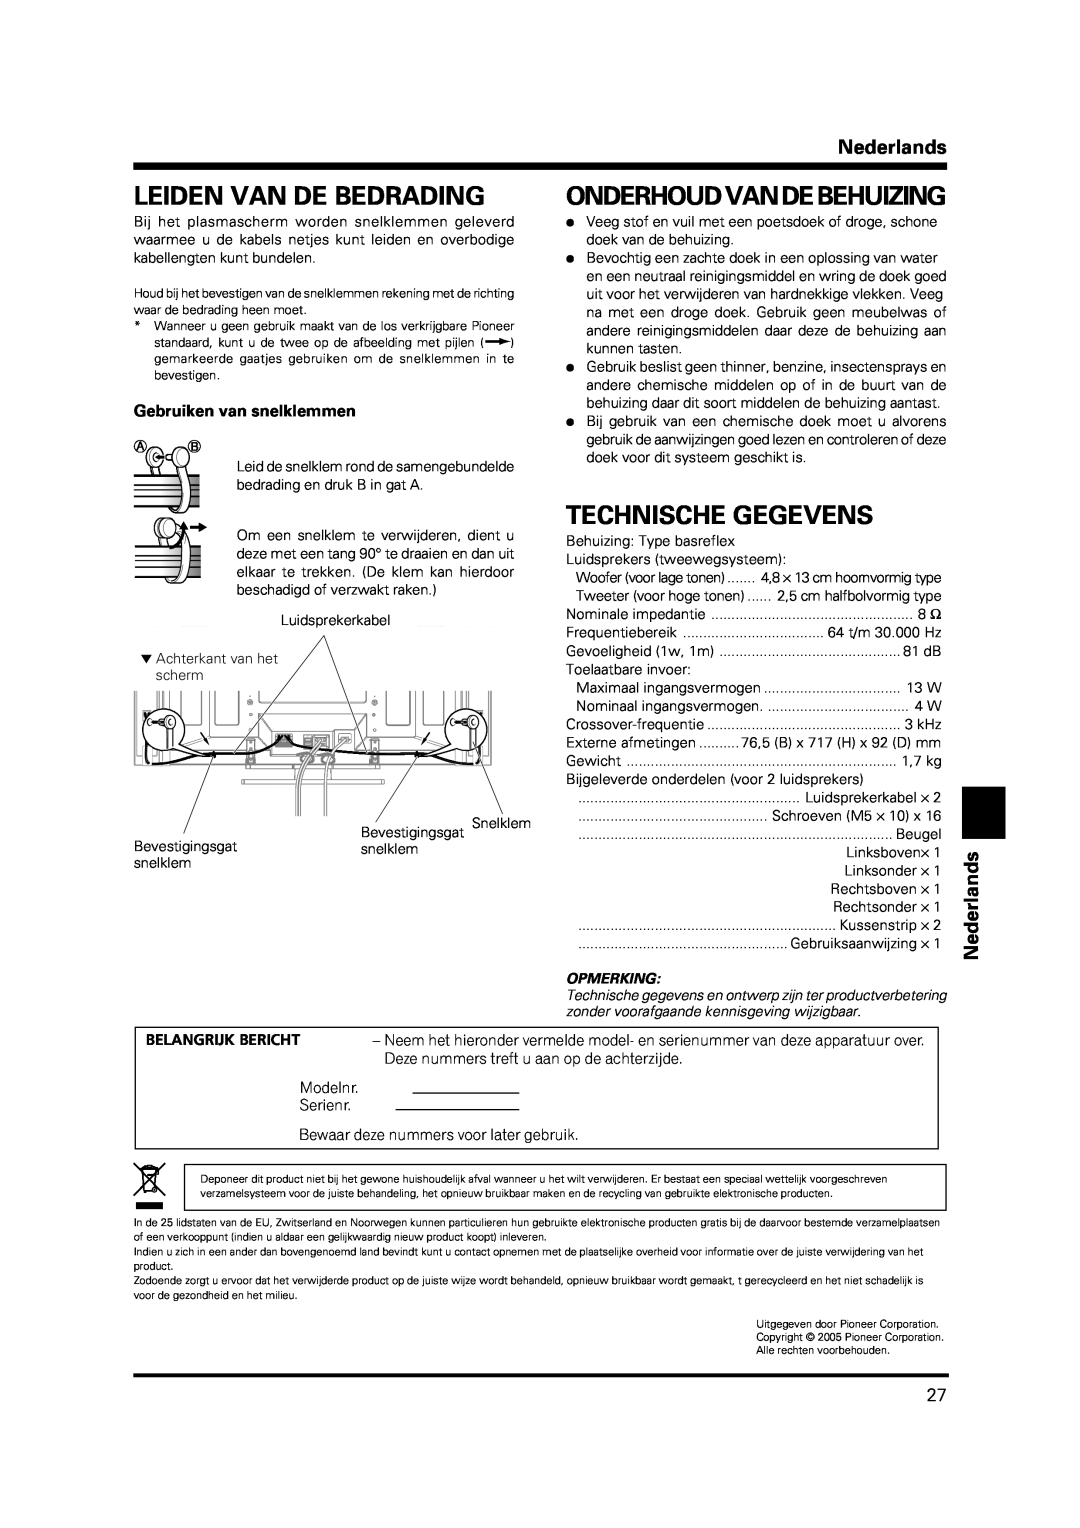 Pioneer PDP-S38 manual Leiden Van De Bedrading, Onderhoudvandebehuizing, Technische Gegevens, Nederlands, Opmerking 